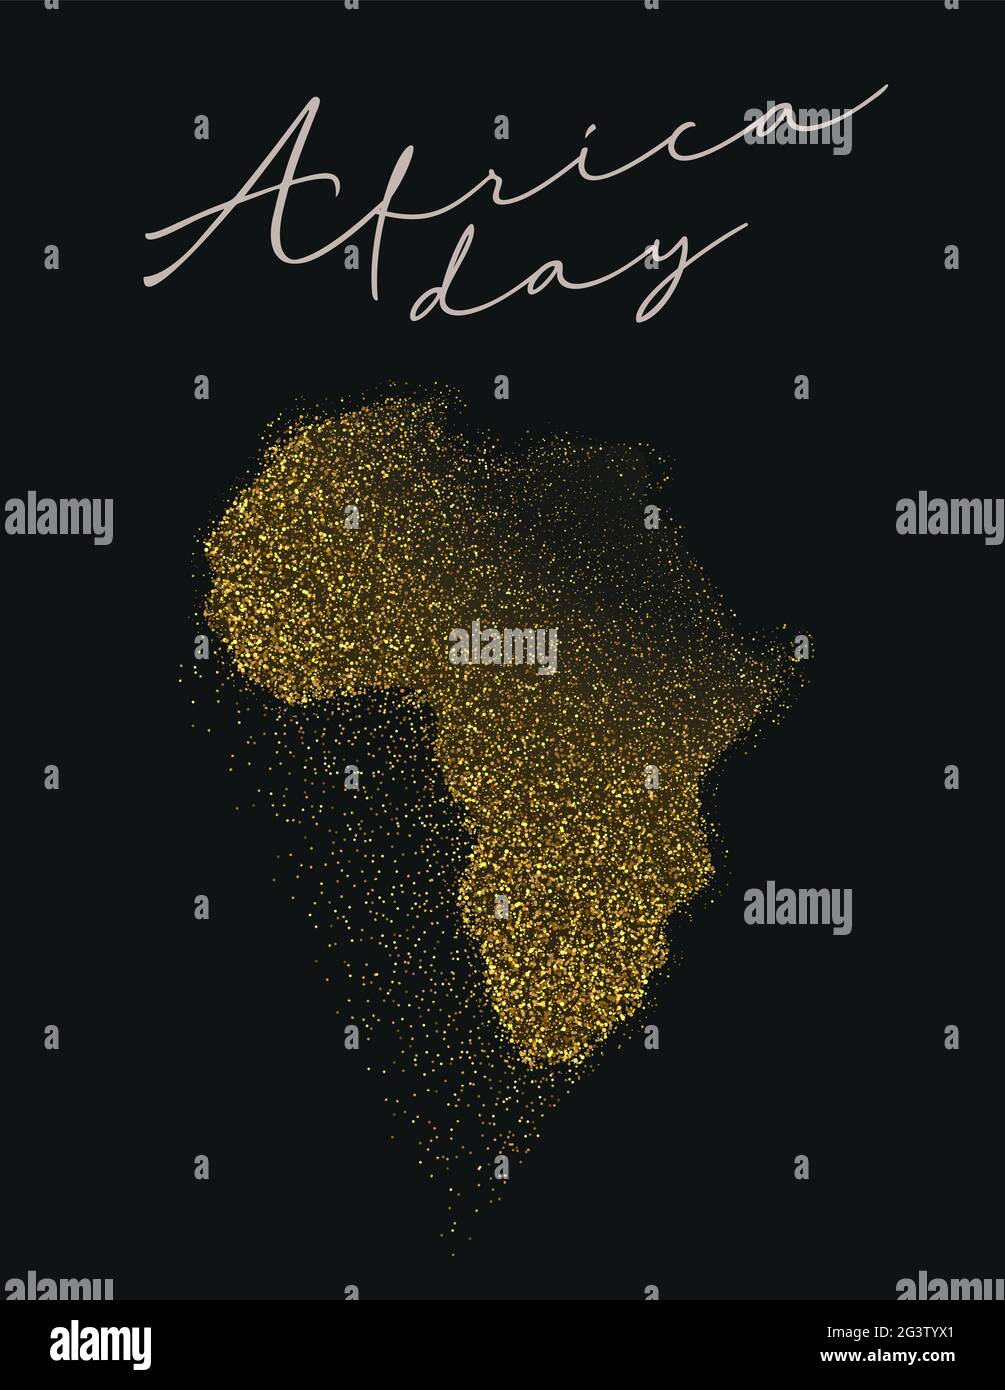 Afrika Tag Grußkarte Illustration für 25 Mai Menschen Freiheit Feier. Luxuriöse afrikanische Kontinent-Karte aus Gold mit elegantem Glitzer und goldenem Glanz Stock Vektor